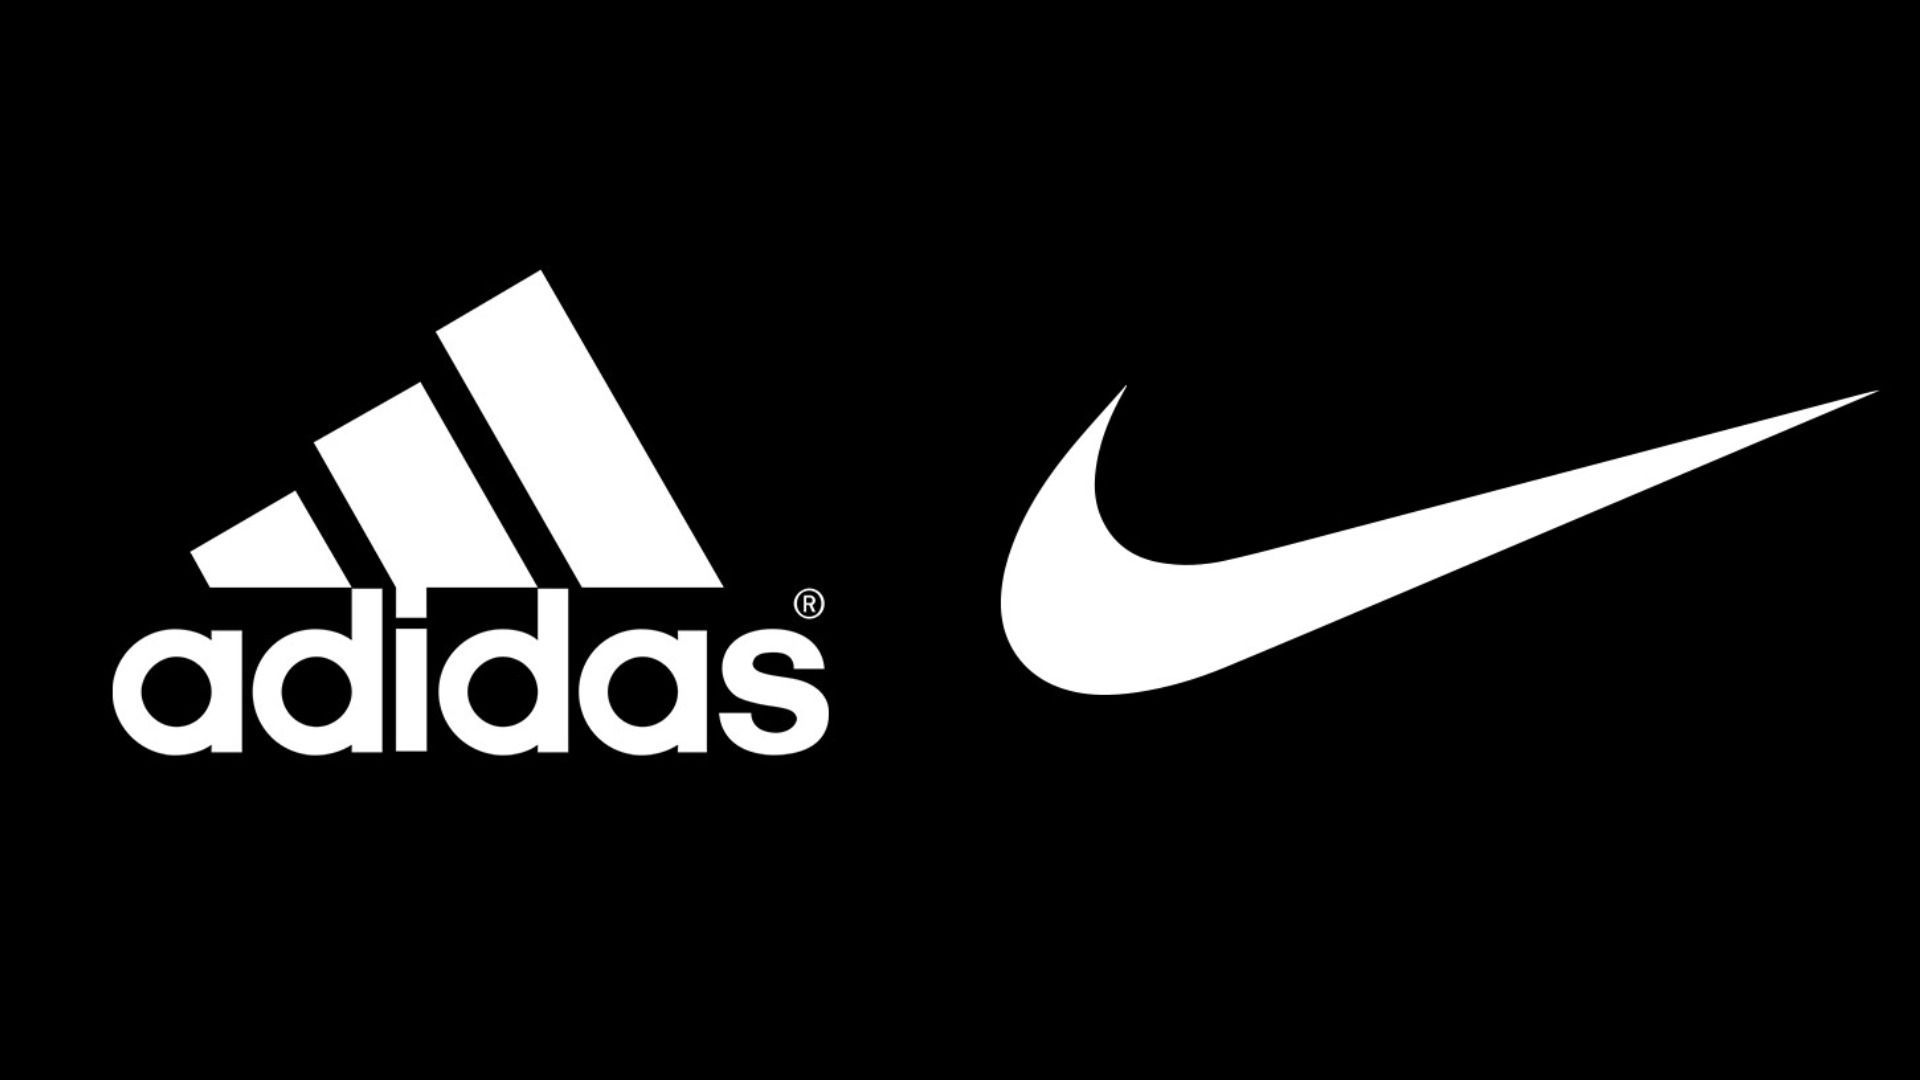 Este es el de la marca de zapatos y su rivalidad con Nike - Random